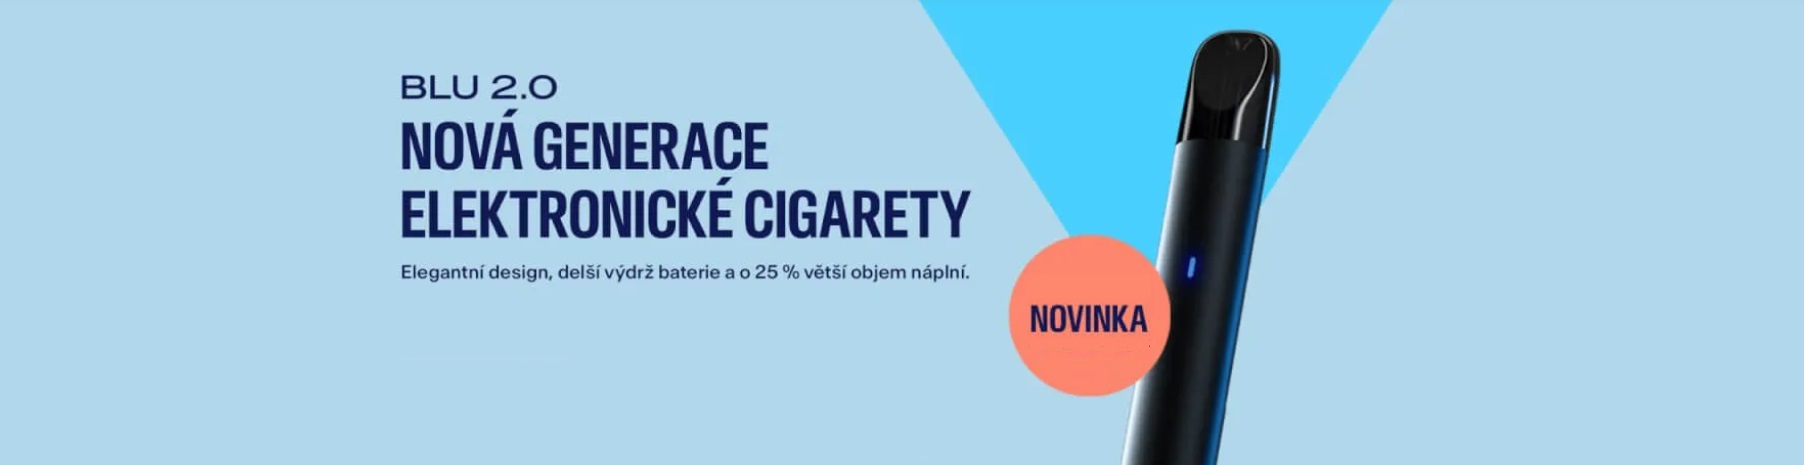 elektronicka-cigareta-blu-2.0-s-dlouhou-vydrzi